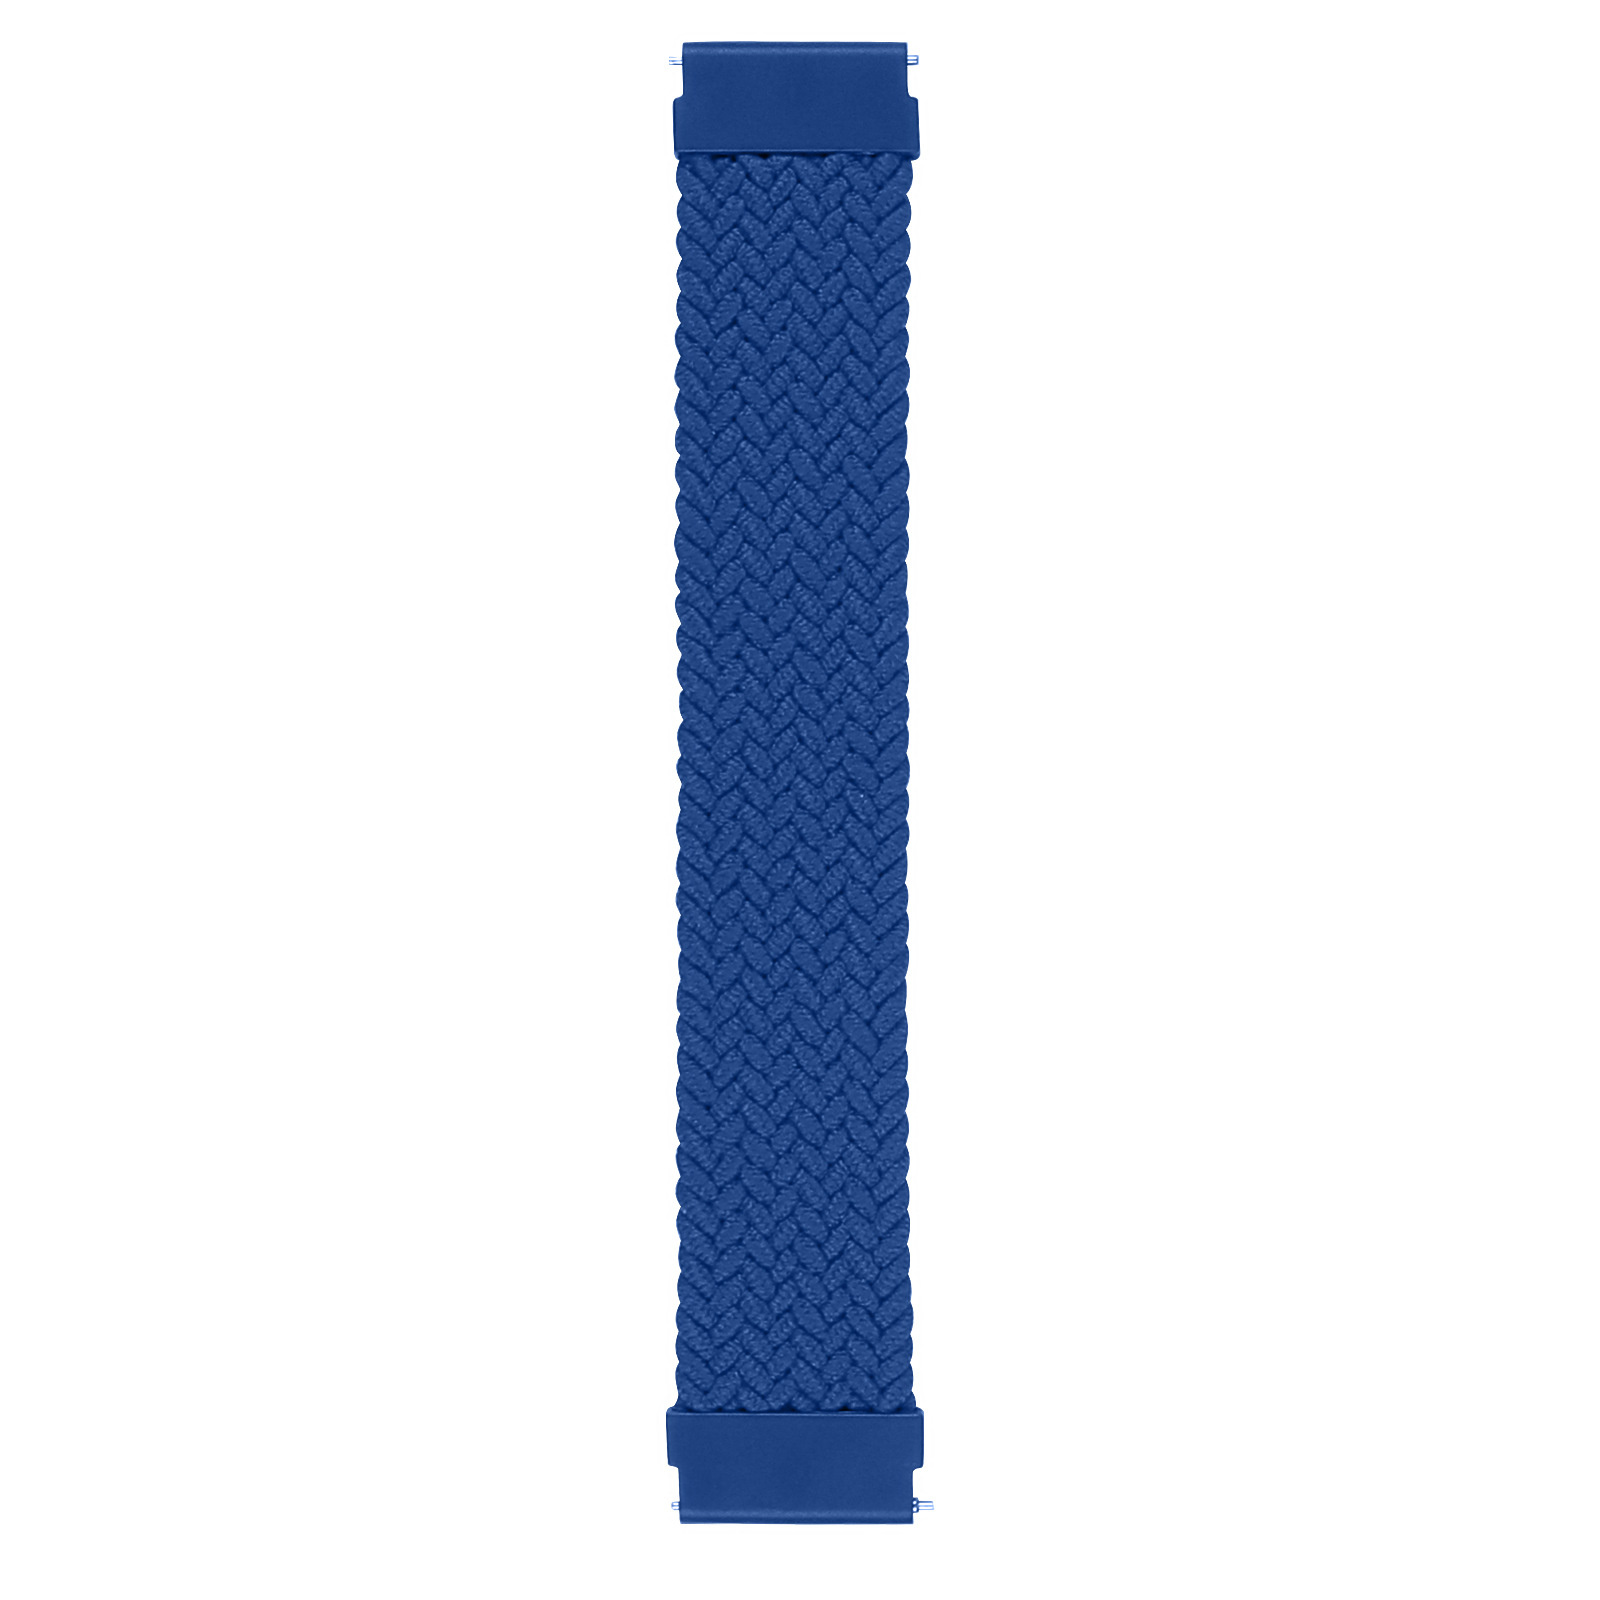 Samsung Galaxy Watch Nylon Braided Solo Strap - Atlantic Blue